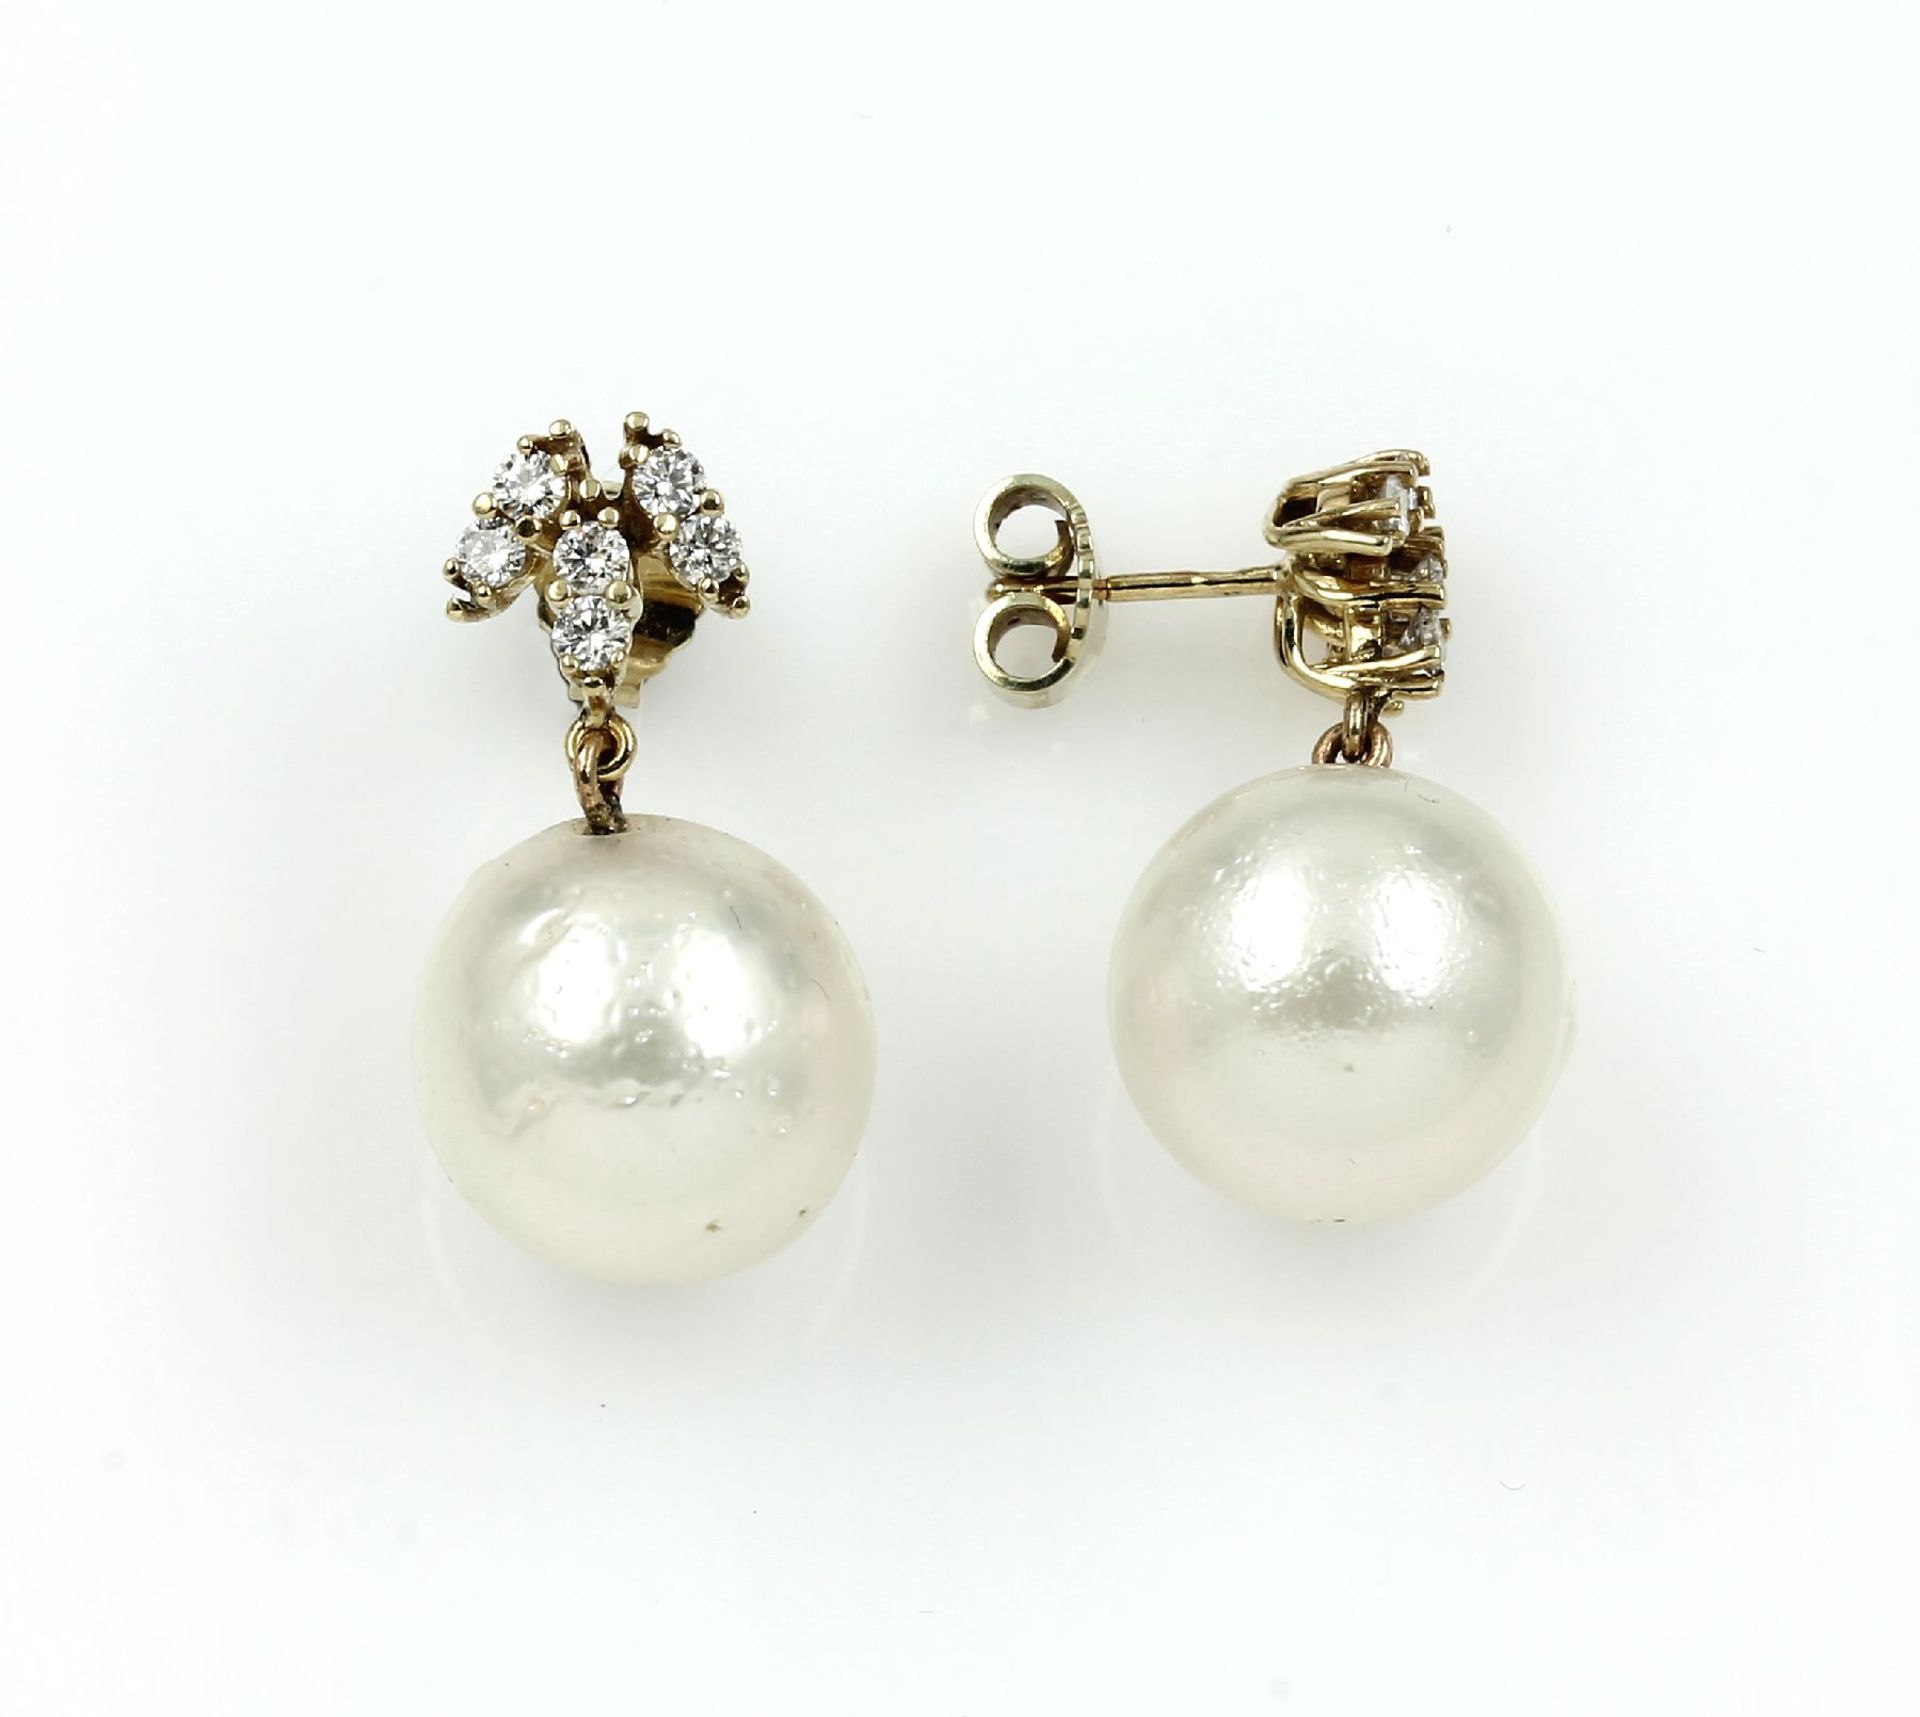 Paar 14 kt Gold Ohrstecker mit Perlen und Brillanten, GG 585/000, 2 weiße Südseezuchtperlen ca. 4.